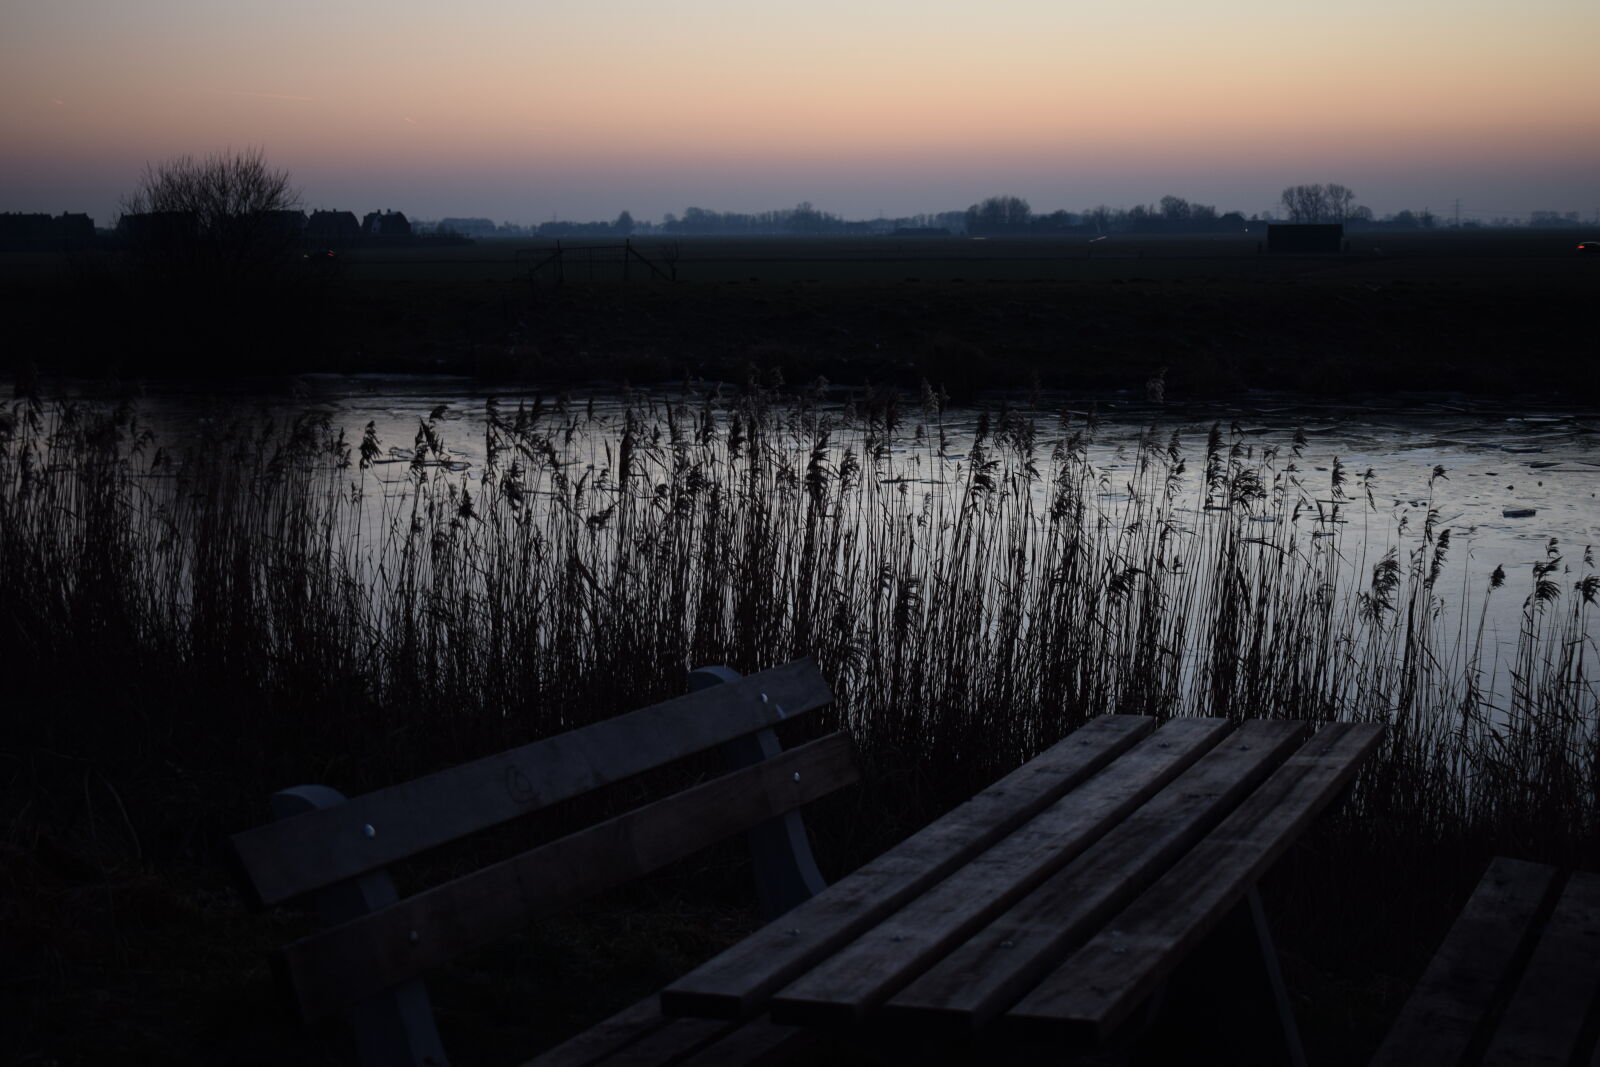 Nikon D3300 sample photo. Bench, canal, evening, evening photography